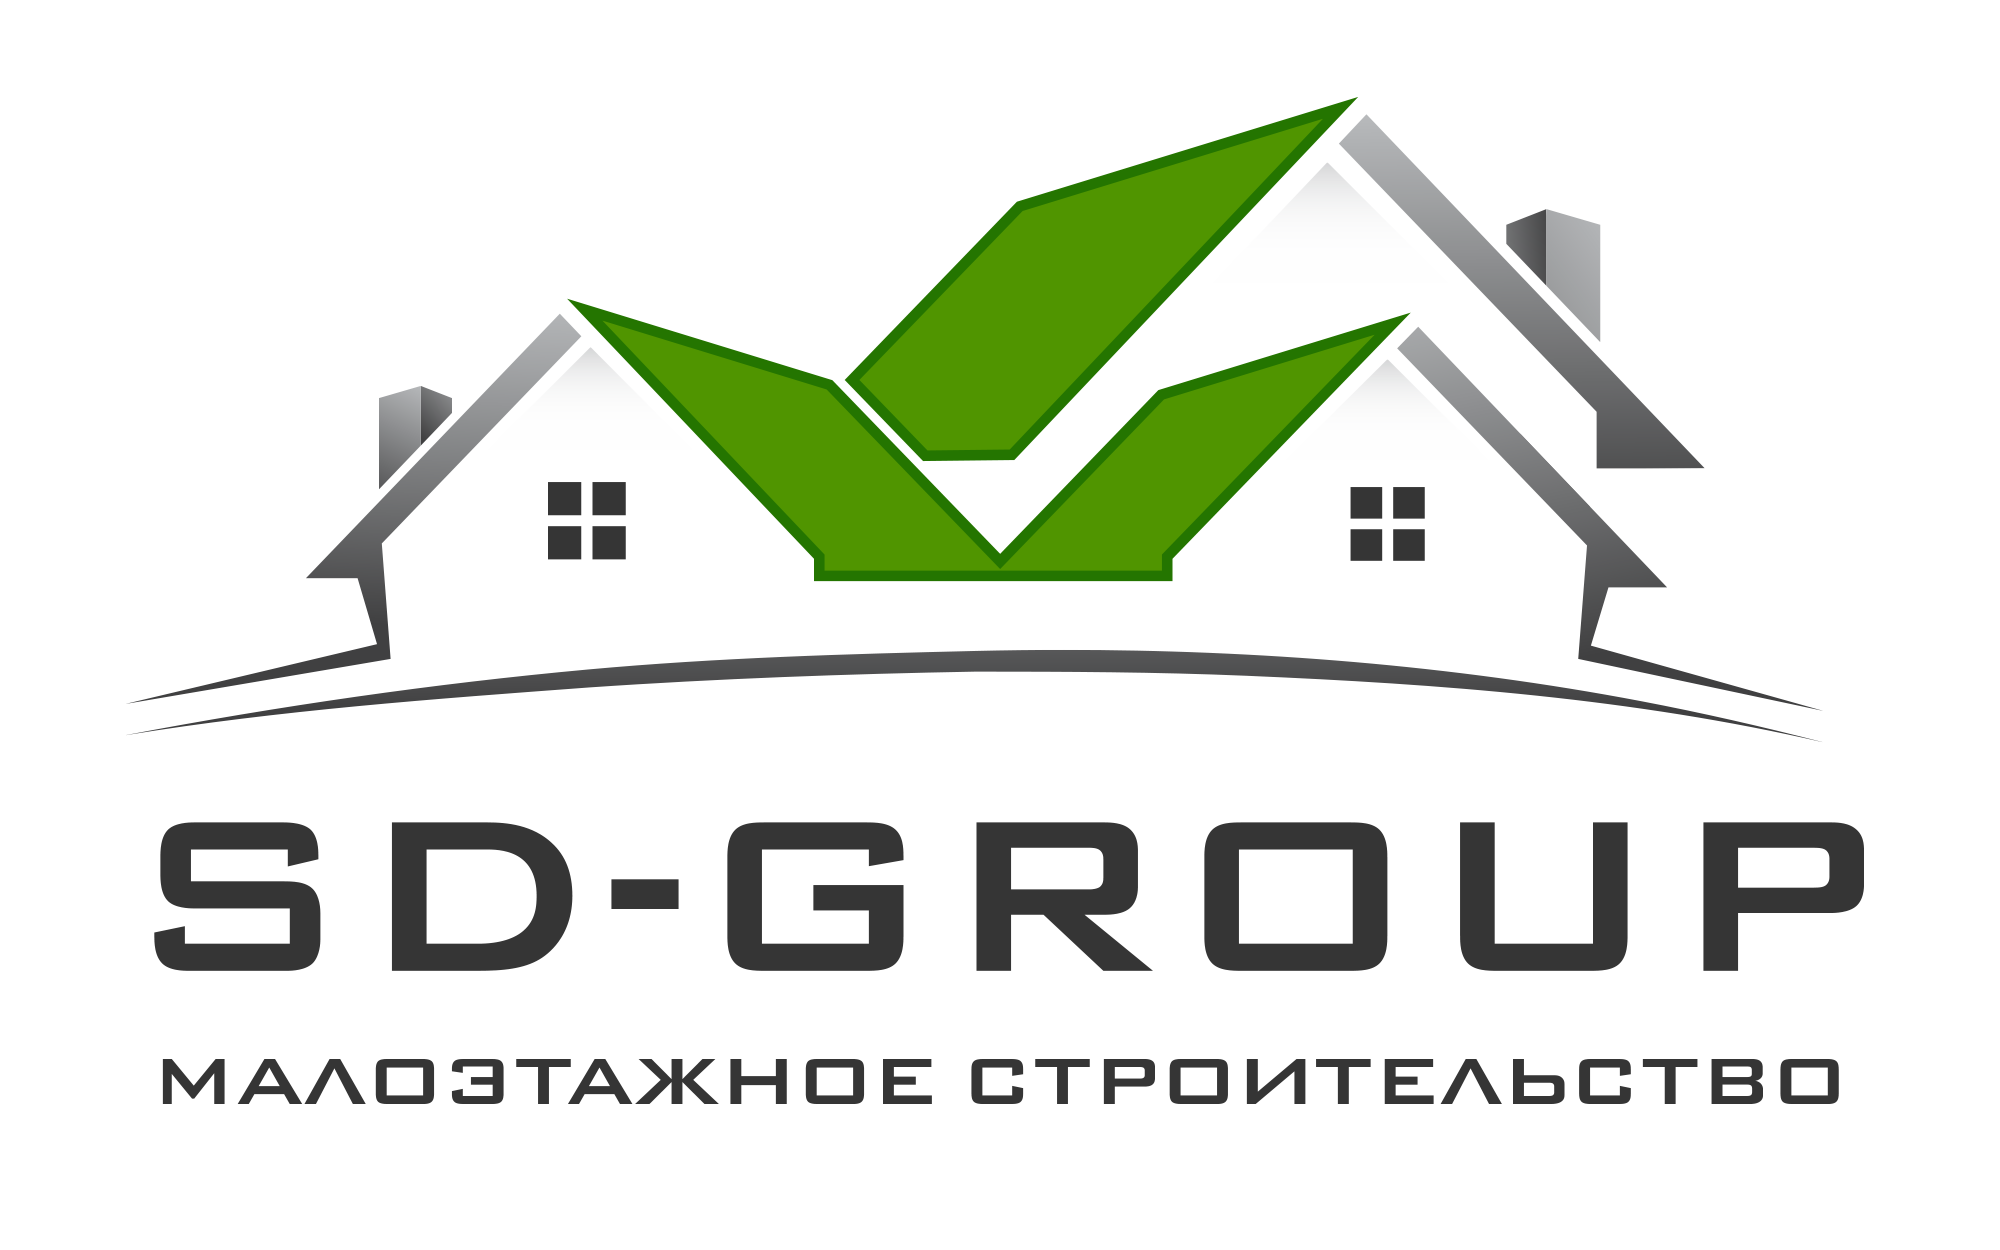 Sd group. СД групп. Малоэтажное строительство логотип. Малоэтажная Страна логотип. СД групп логотип.